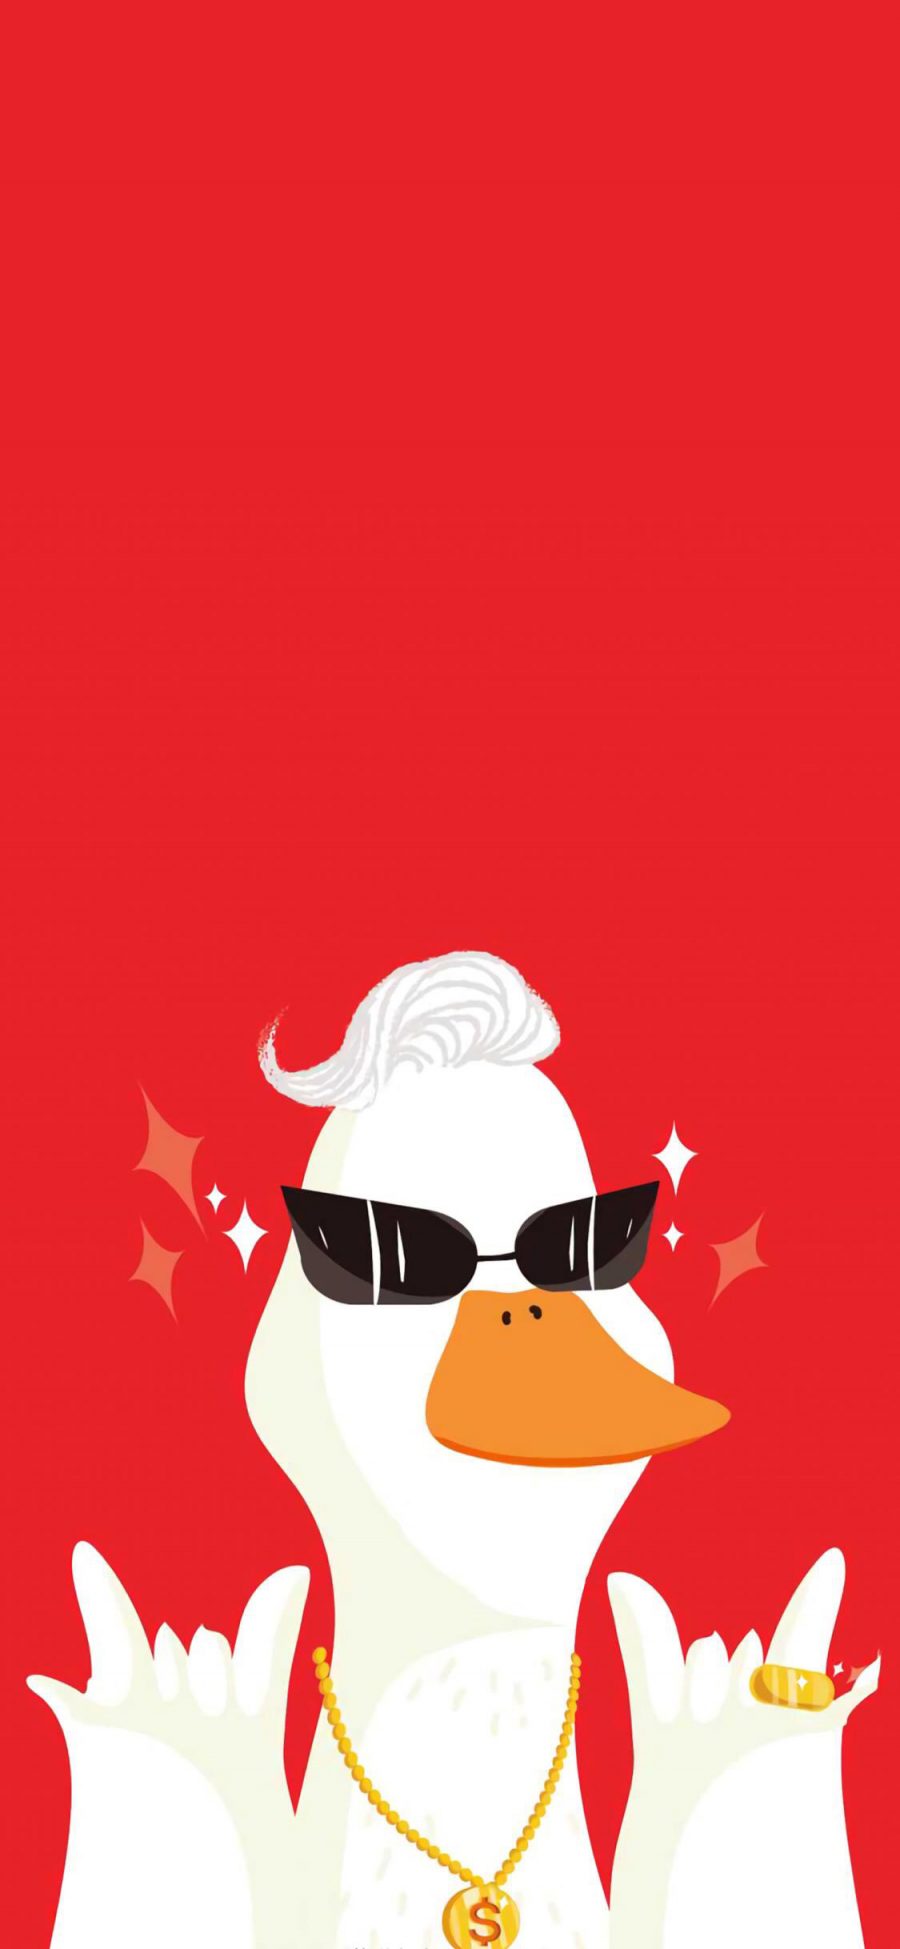 [2436×1125]鸭子 卡通 可爱 摇滚 金链 墨镜 红色 苹果手机动漫壁纸图片